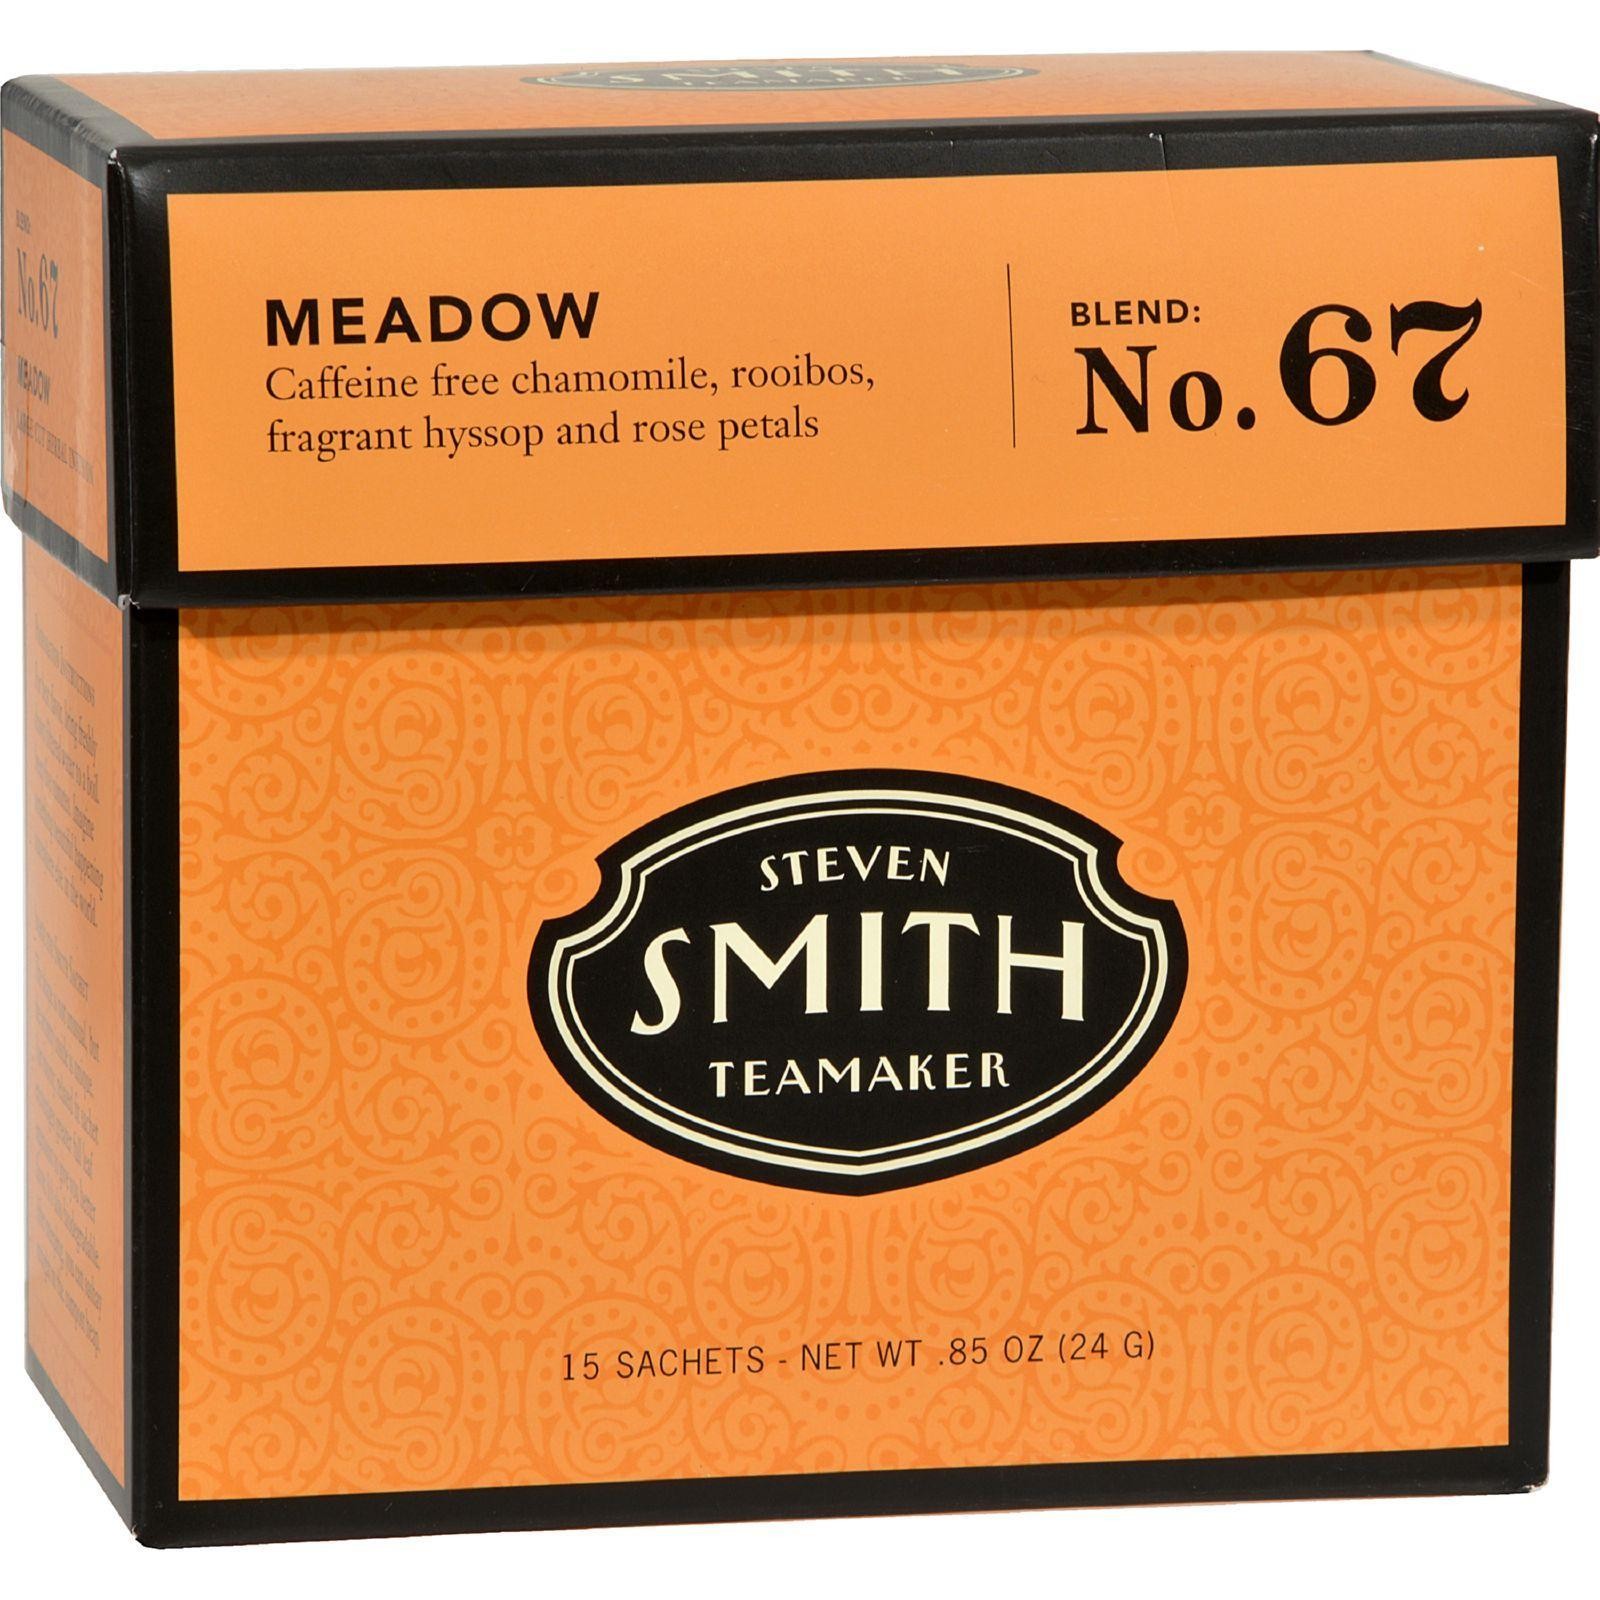 1759  Meadow Herbal Tea - 6x15 Bag